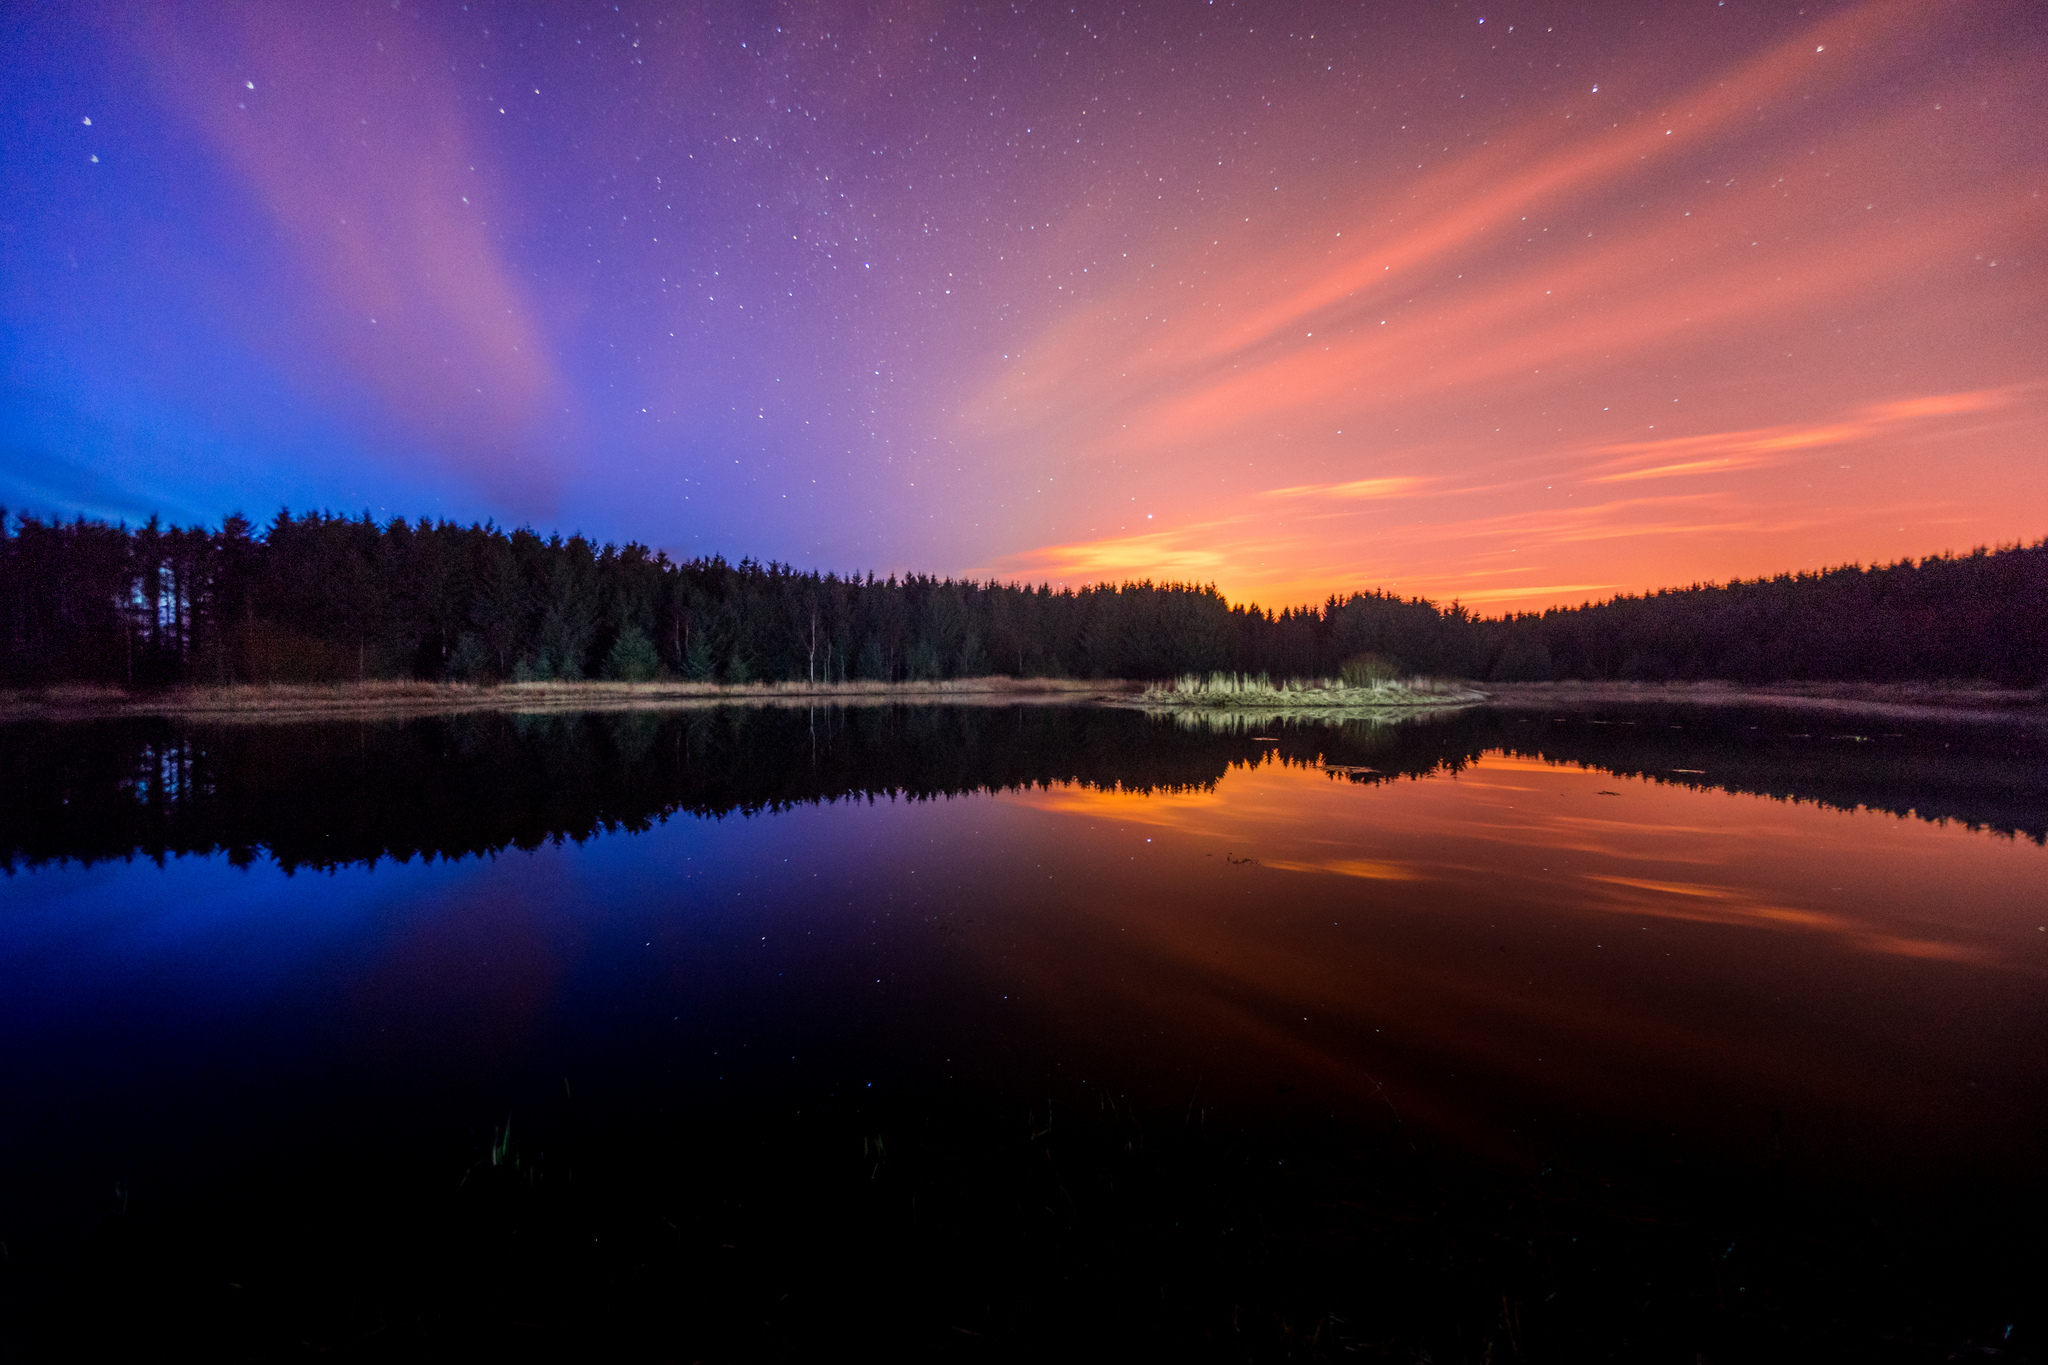 Night lake. Ночной пейзаж. Озеро ночью. Красивые ночные пейзажи. Звездное небо над озером.